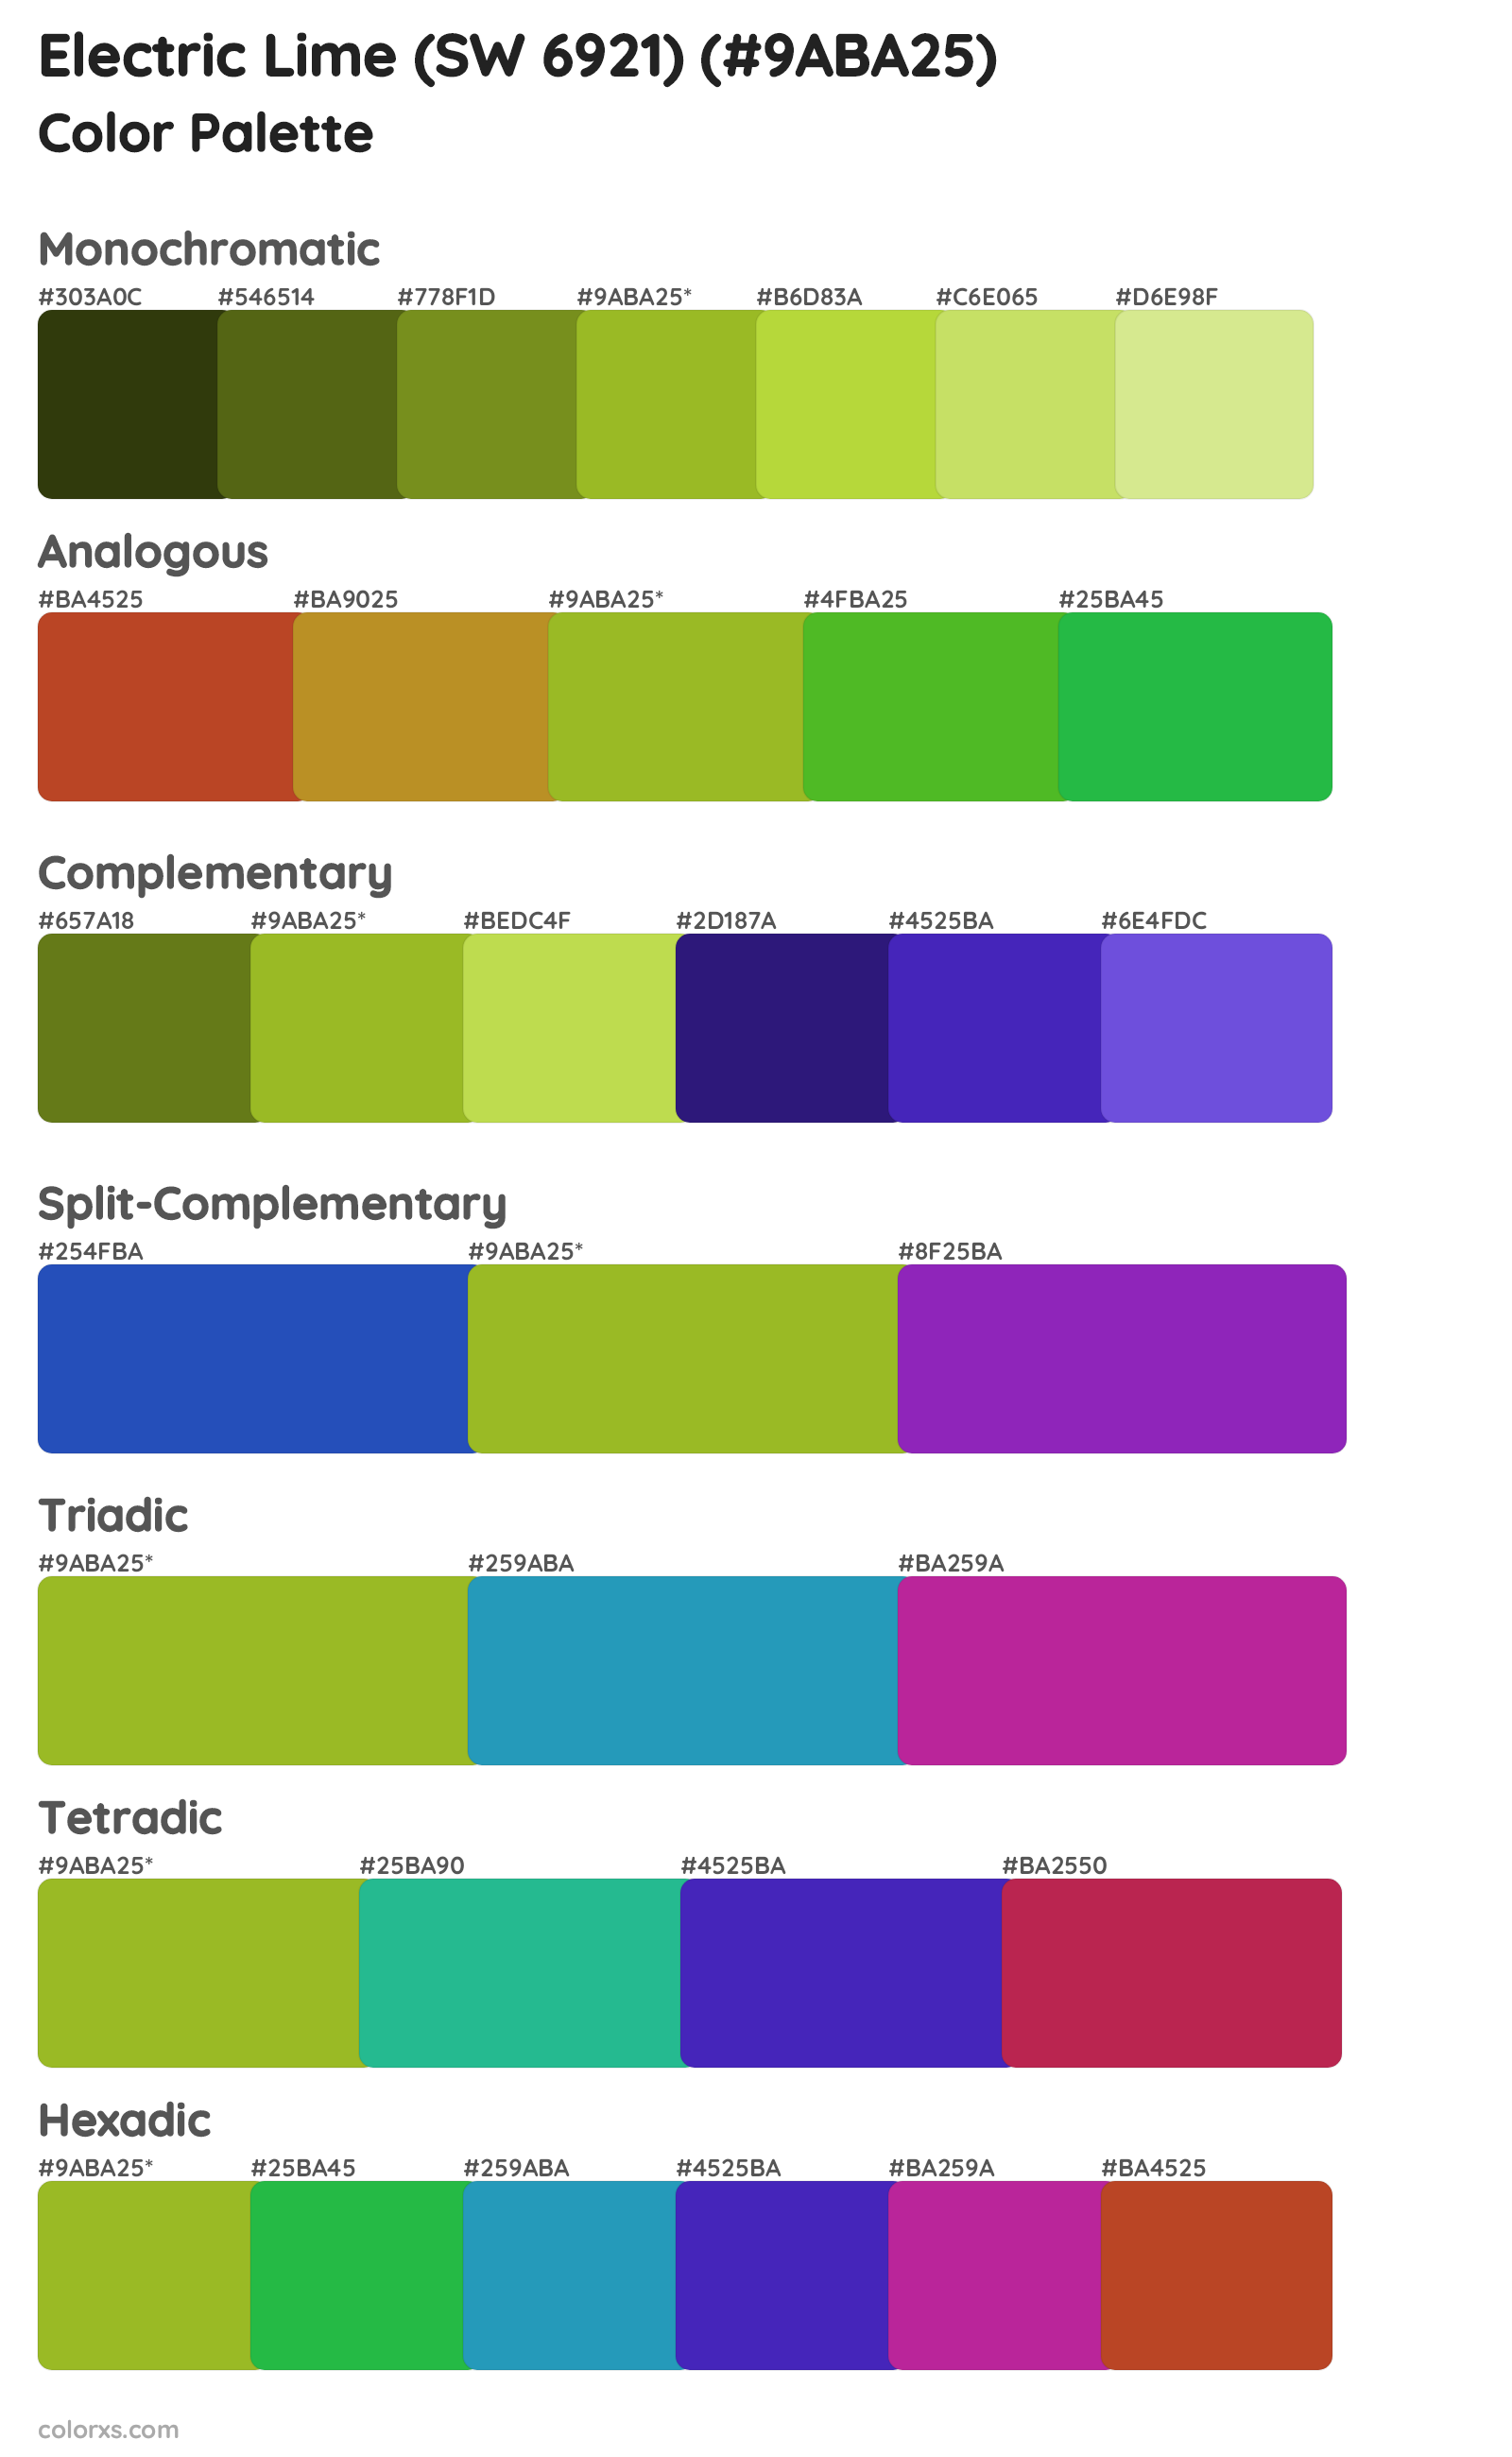 Electric Lime (SW 6921) Color Scheme Palettes